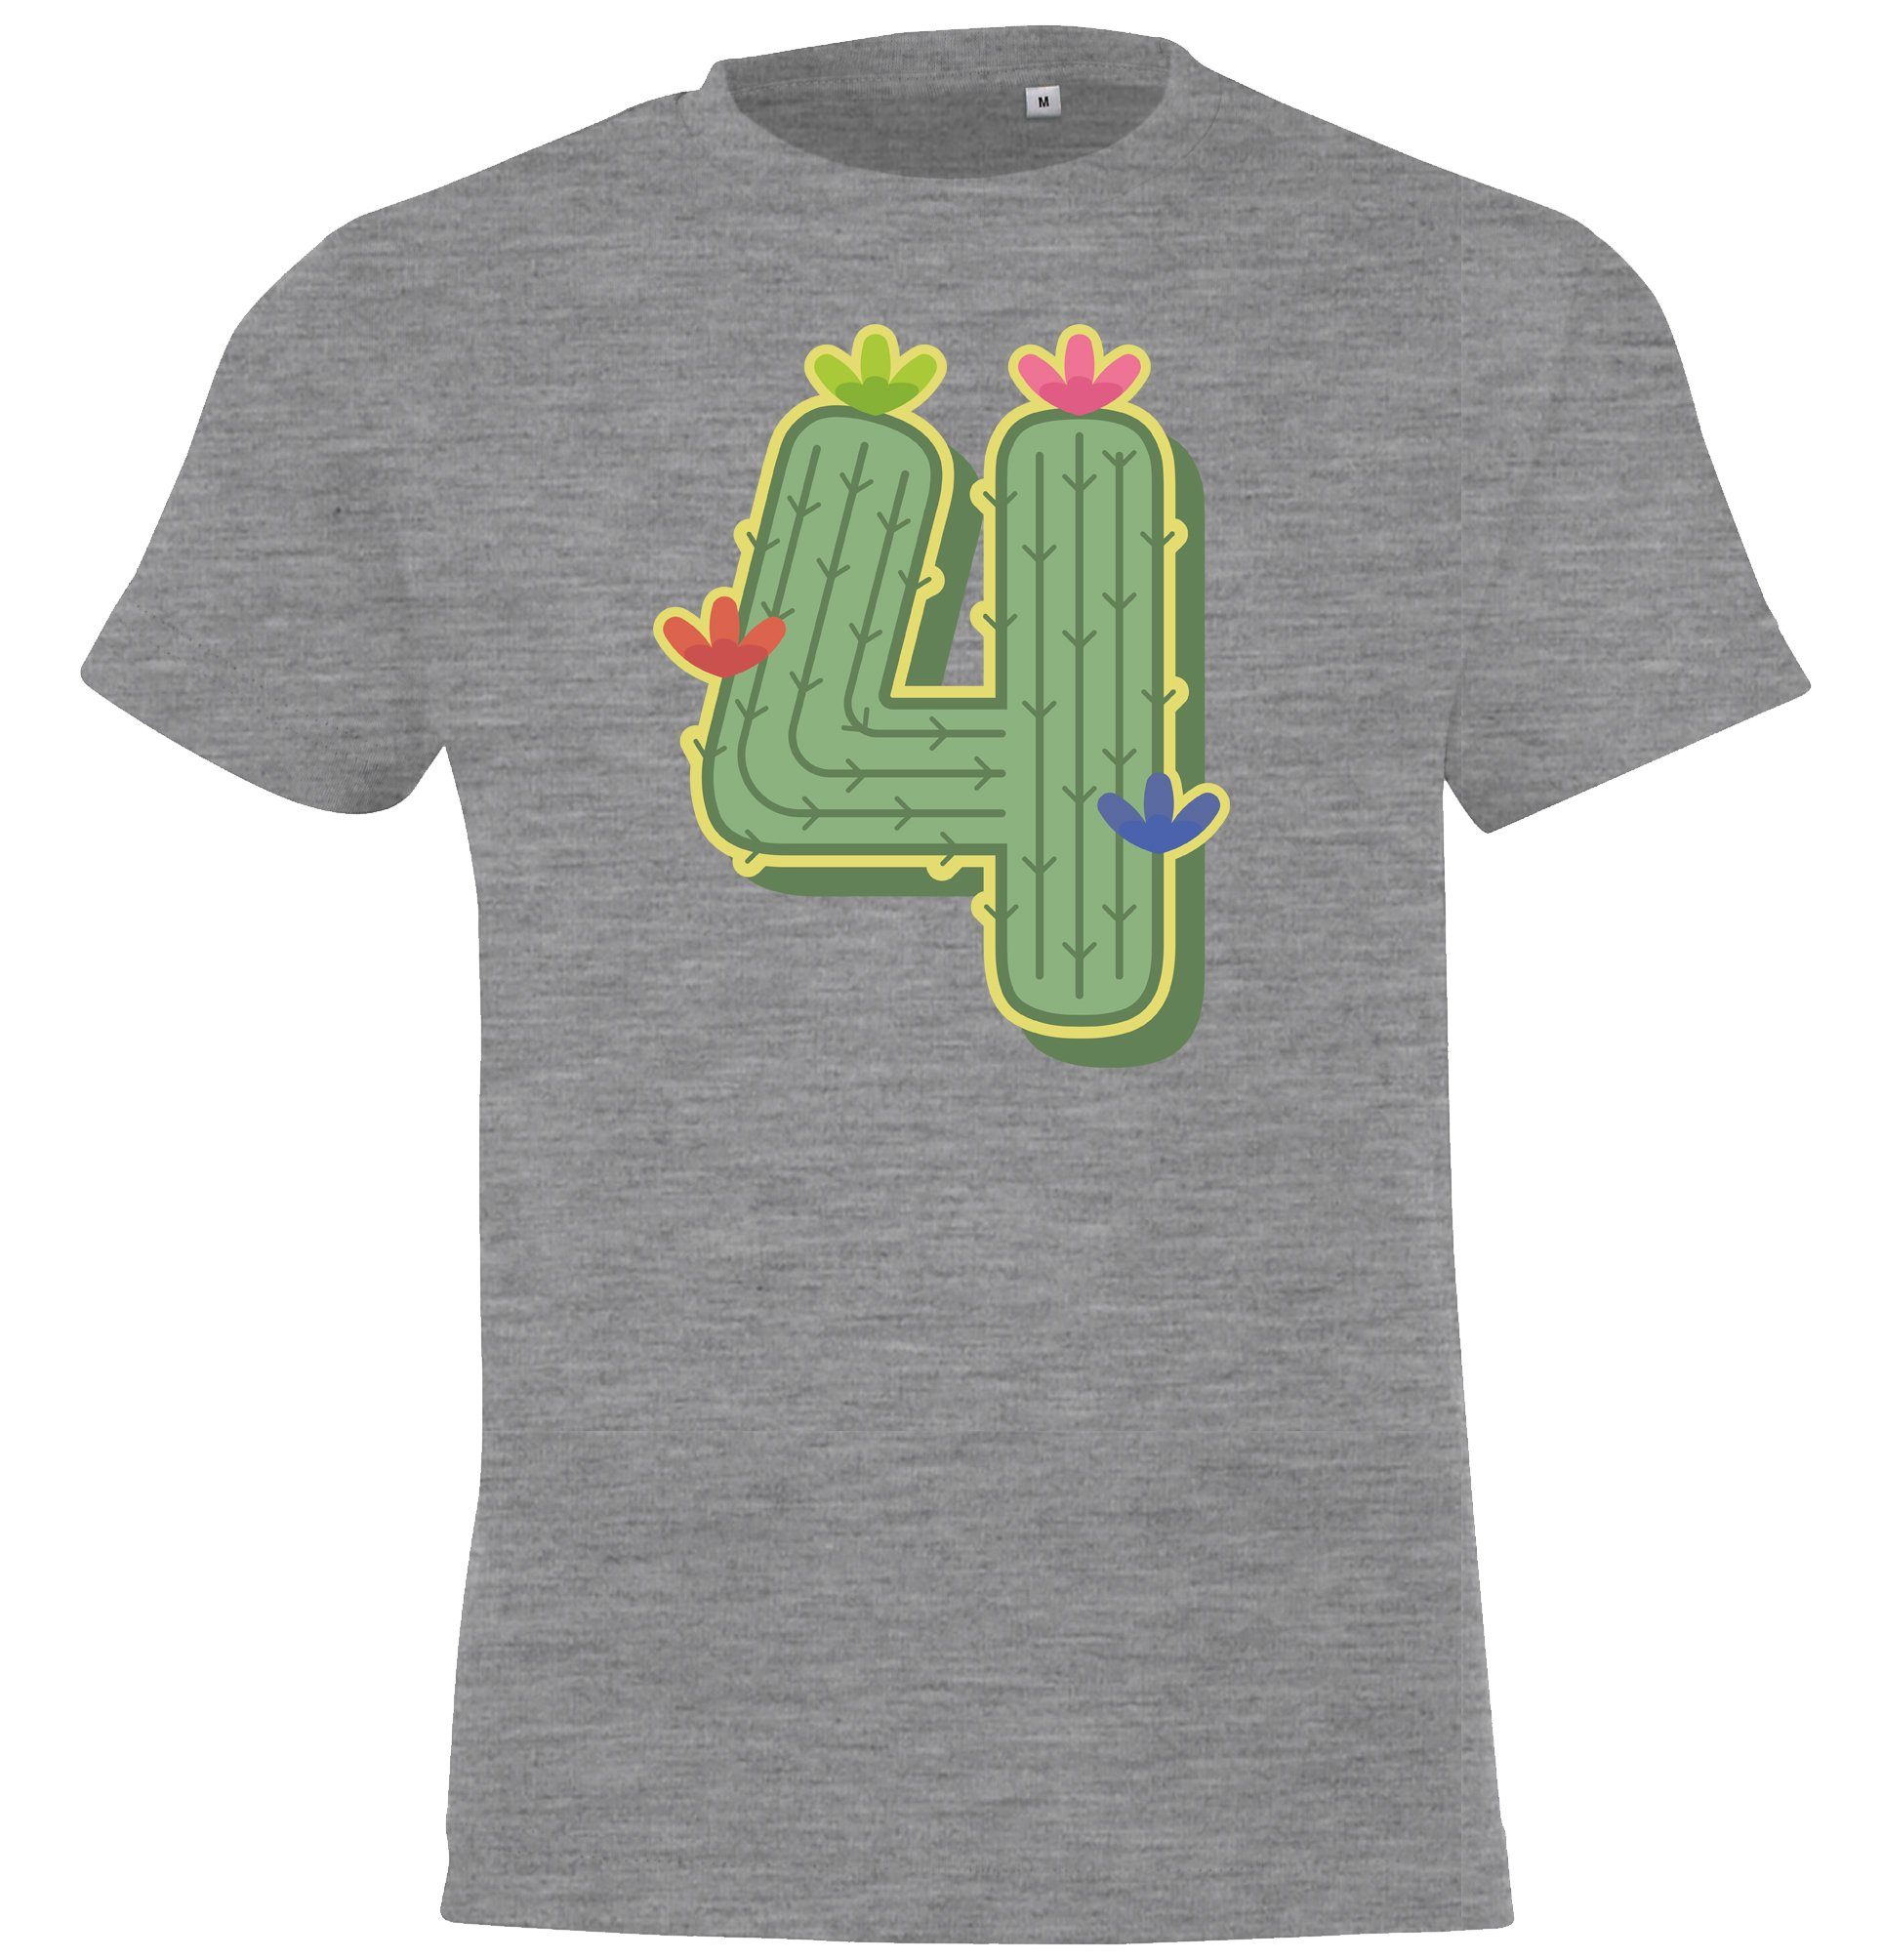 Youth Designz T-Shirt 4 Jahre Alt Geburtstags T-Shirt für Mädchen mit lustigem Kaktus Frontprint Grau